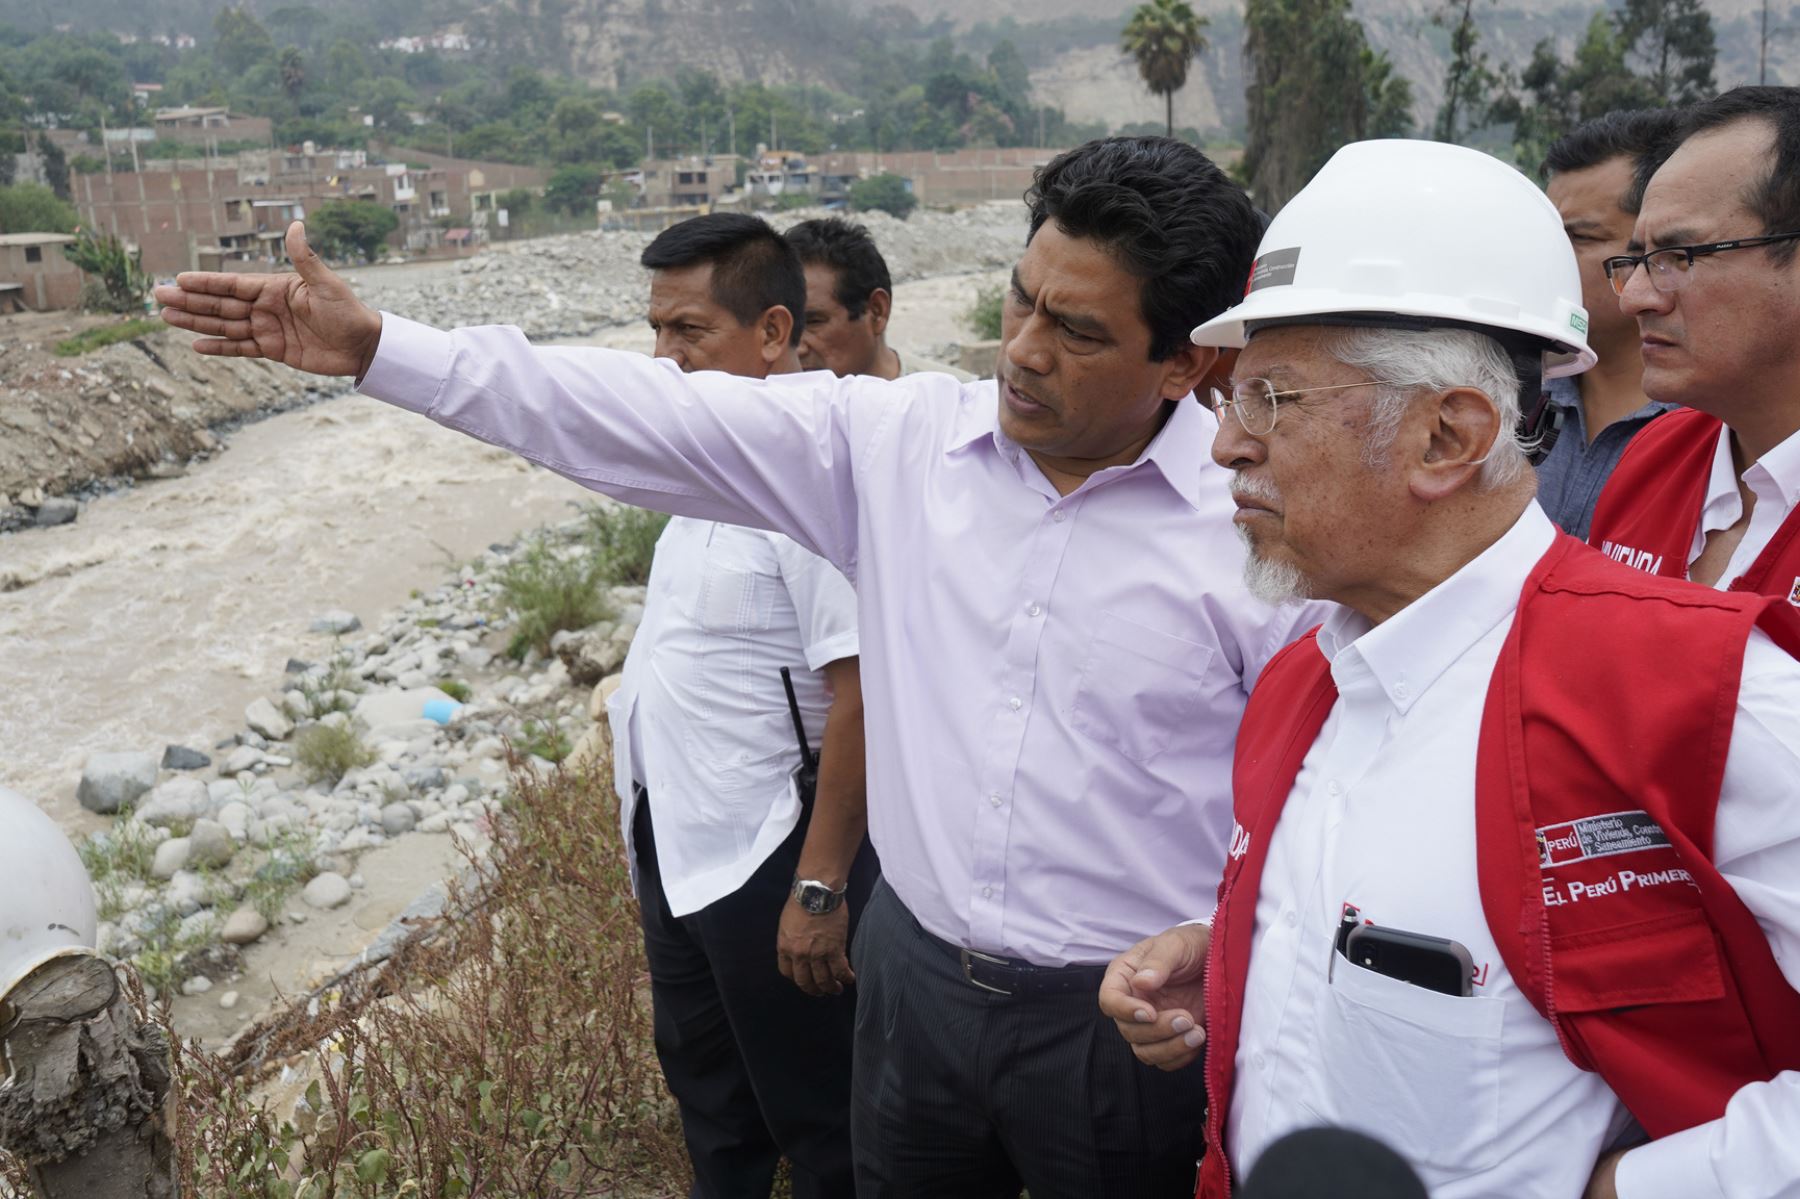 El ministro de Vivienda, Construcción y Saneamiento, Javier Piqué del Pozo, supervisará este miércoles los trabajos de prevención en Piura.